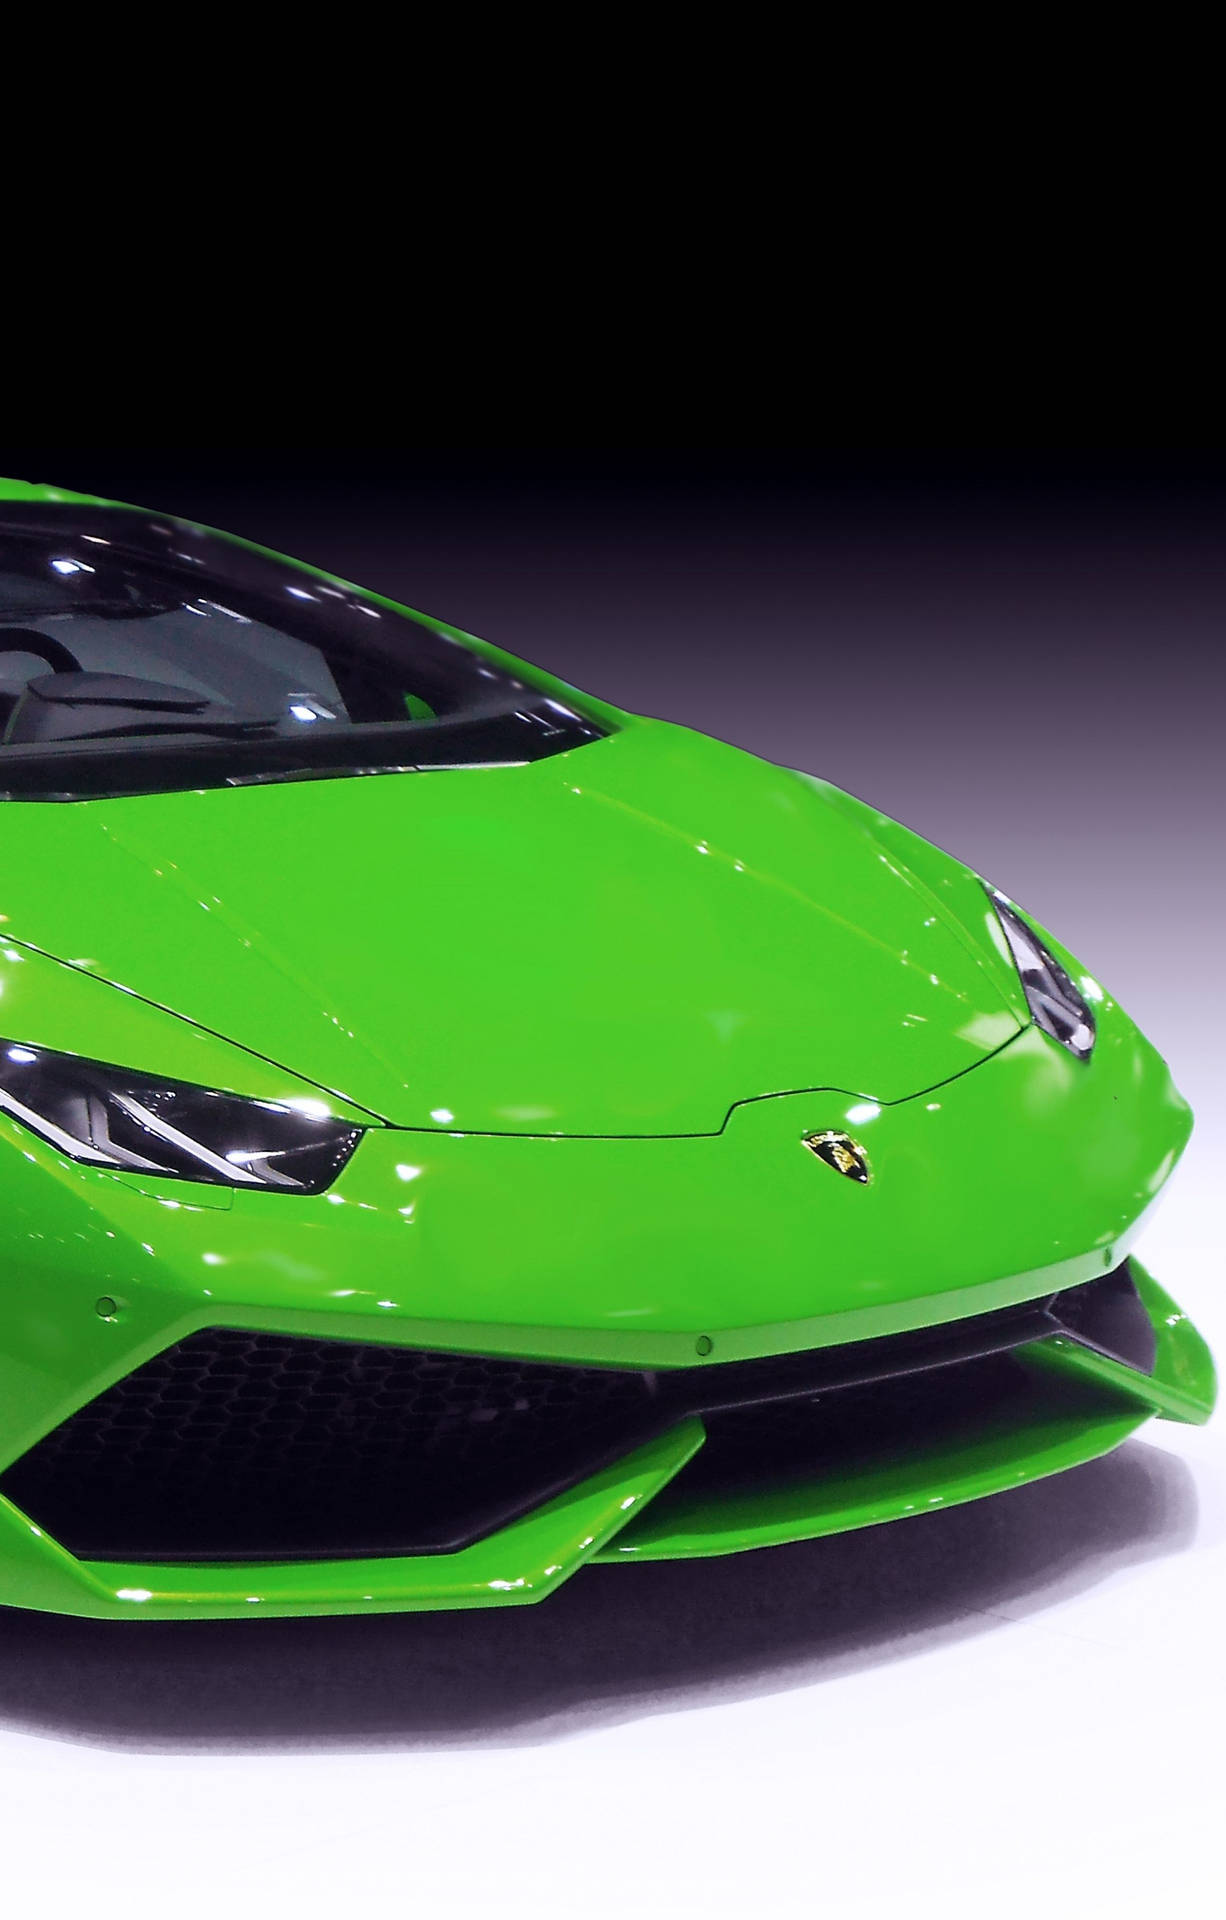 Erlebedie Geschwindigkeit Mit Diesem Luxuriösen 4k Lamborghini Iphone. Wallpaper